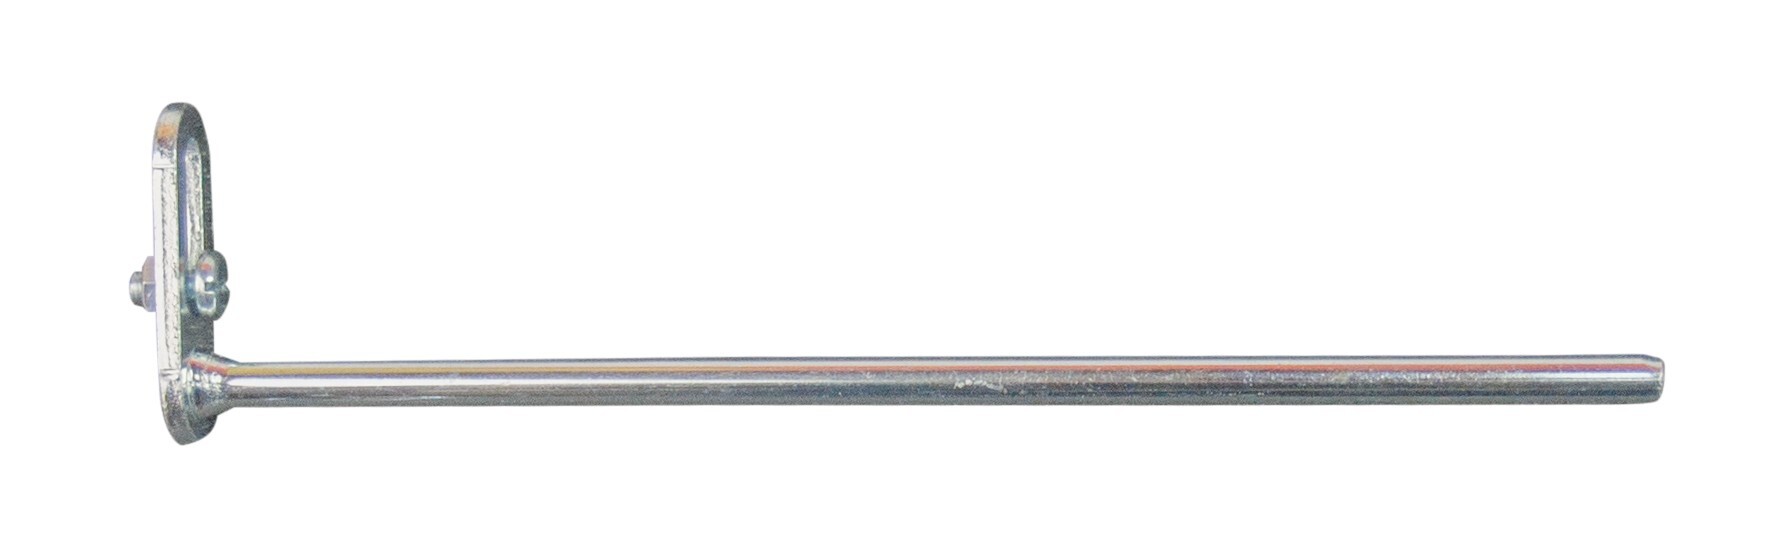 Lochwandhaken, Typ 3, 200 mm, glanzverzinkt